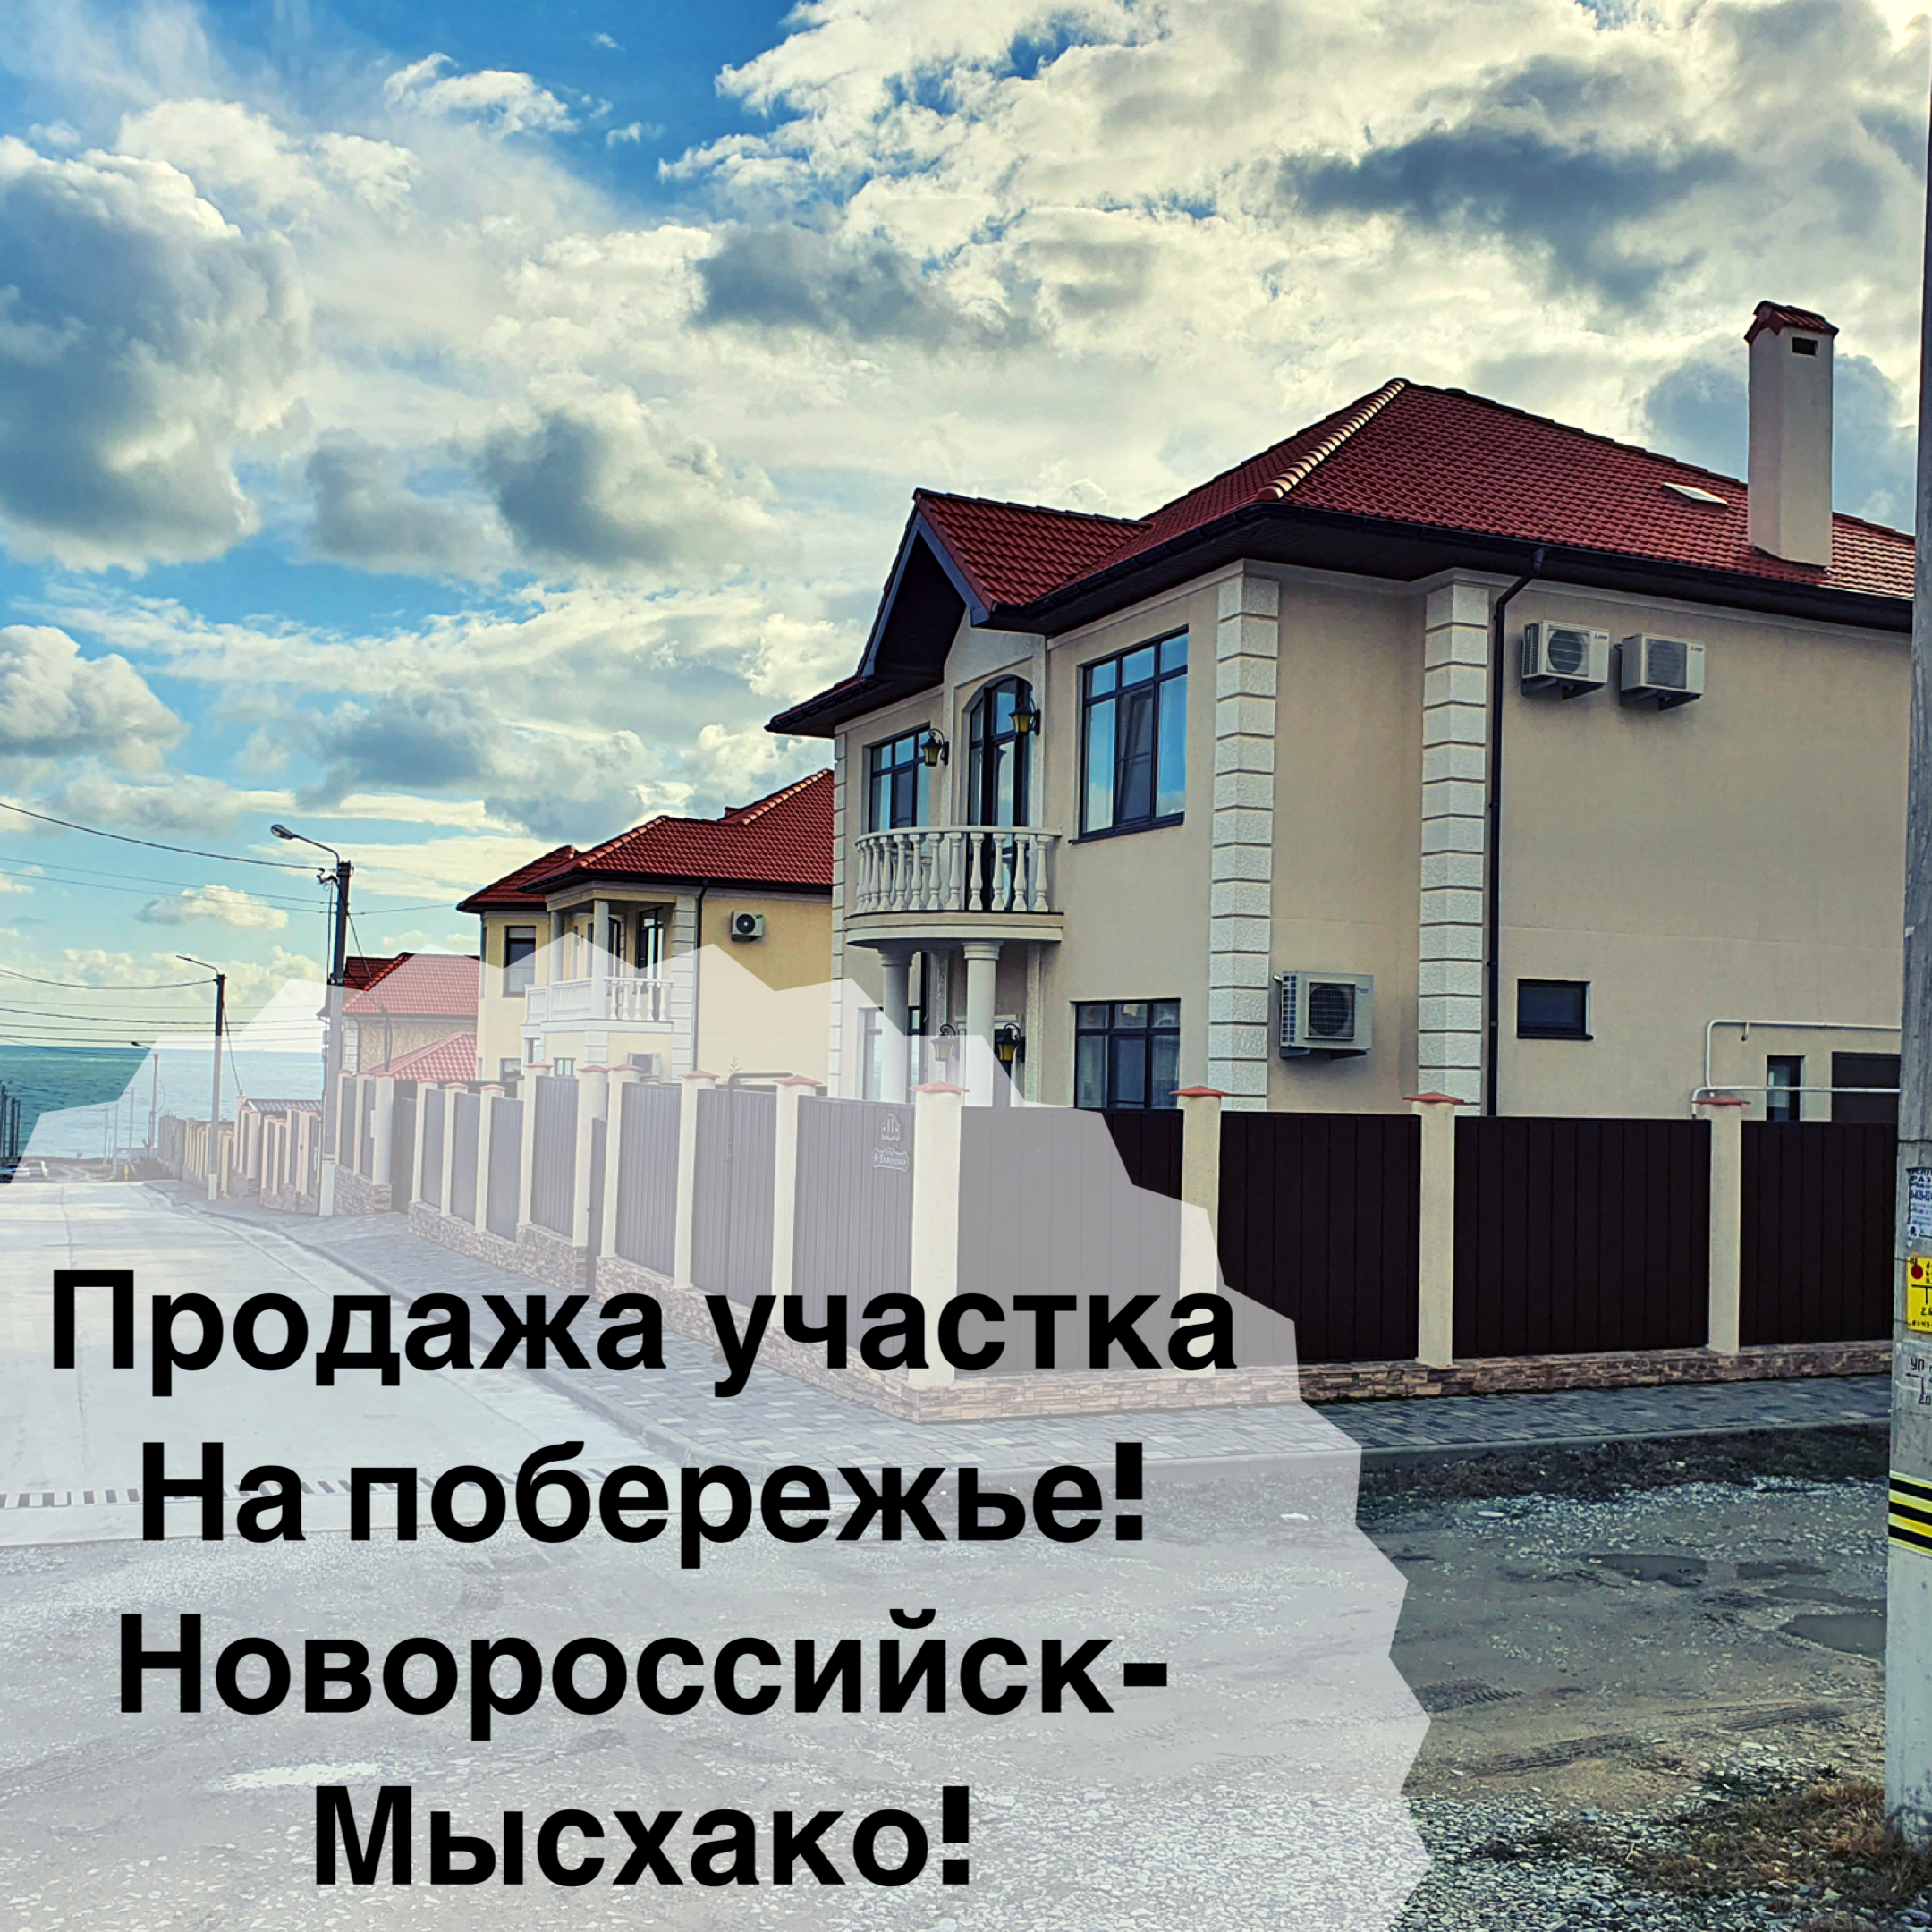 Коттеджный поселок панорама. Новороссийск, Мысхако